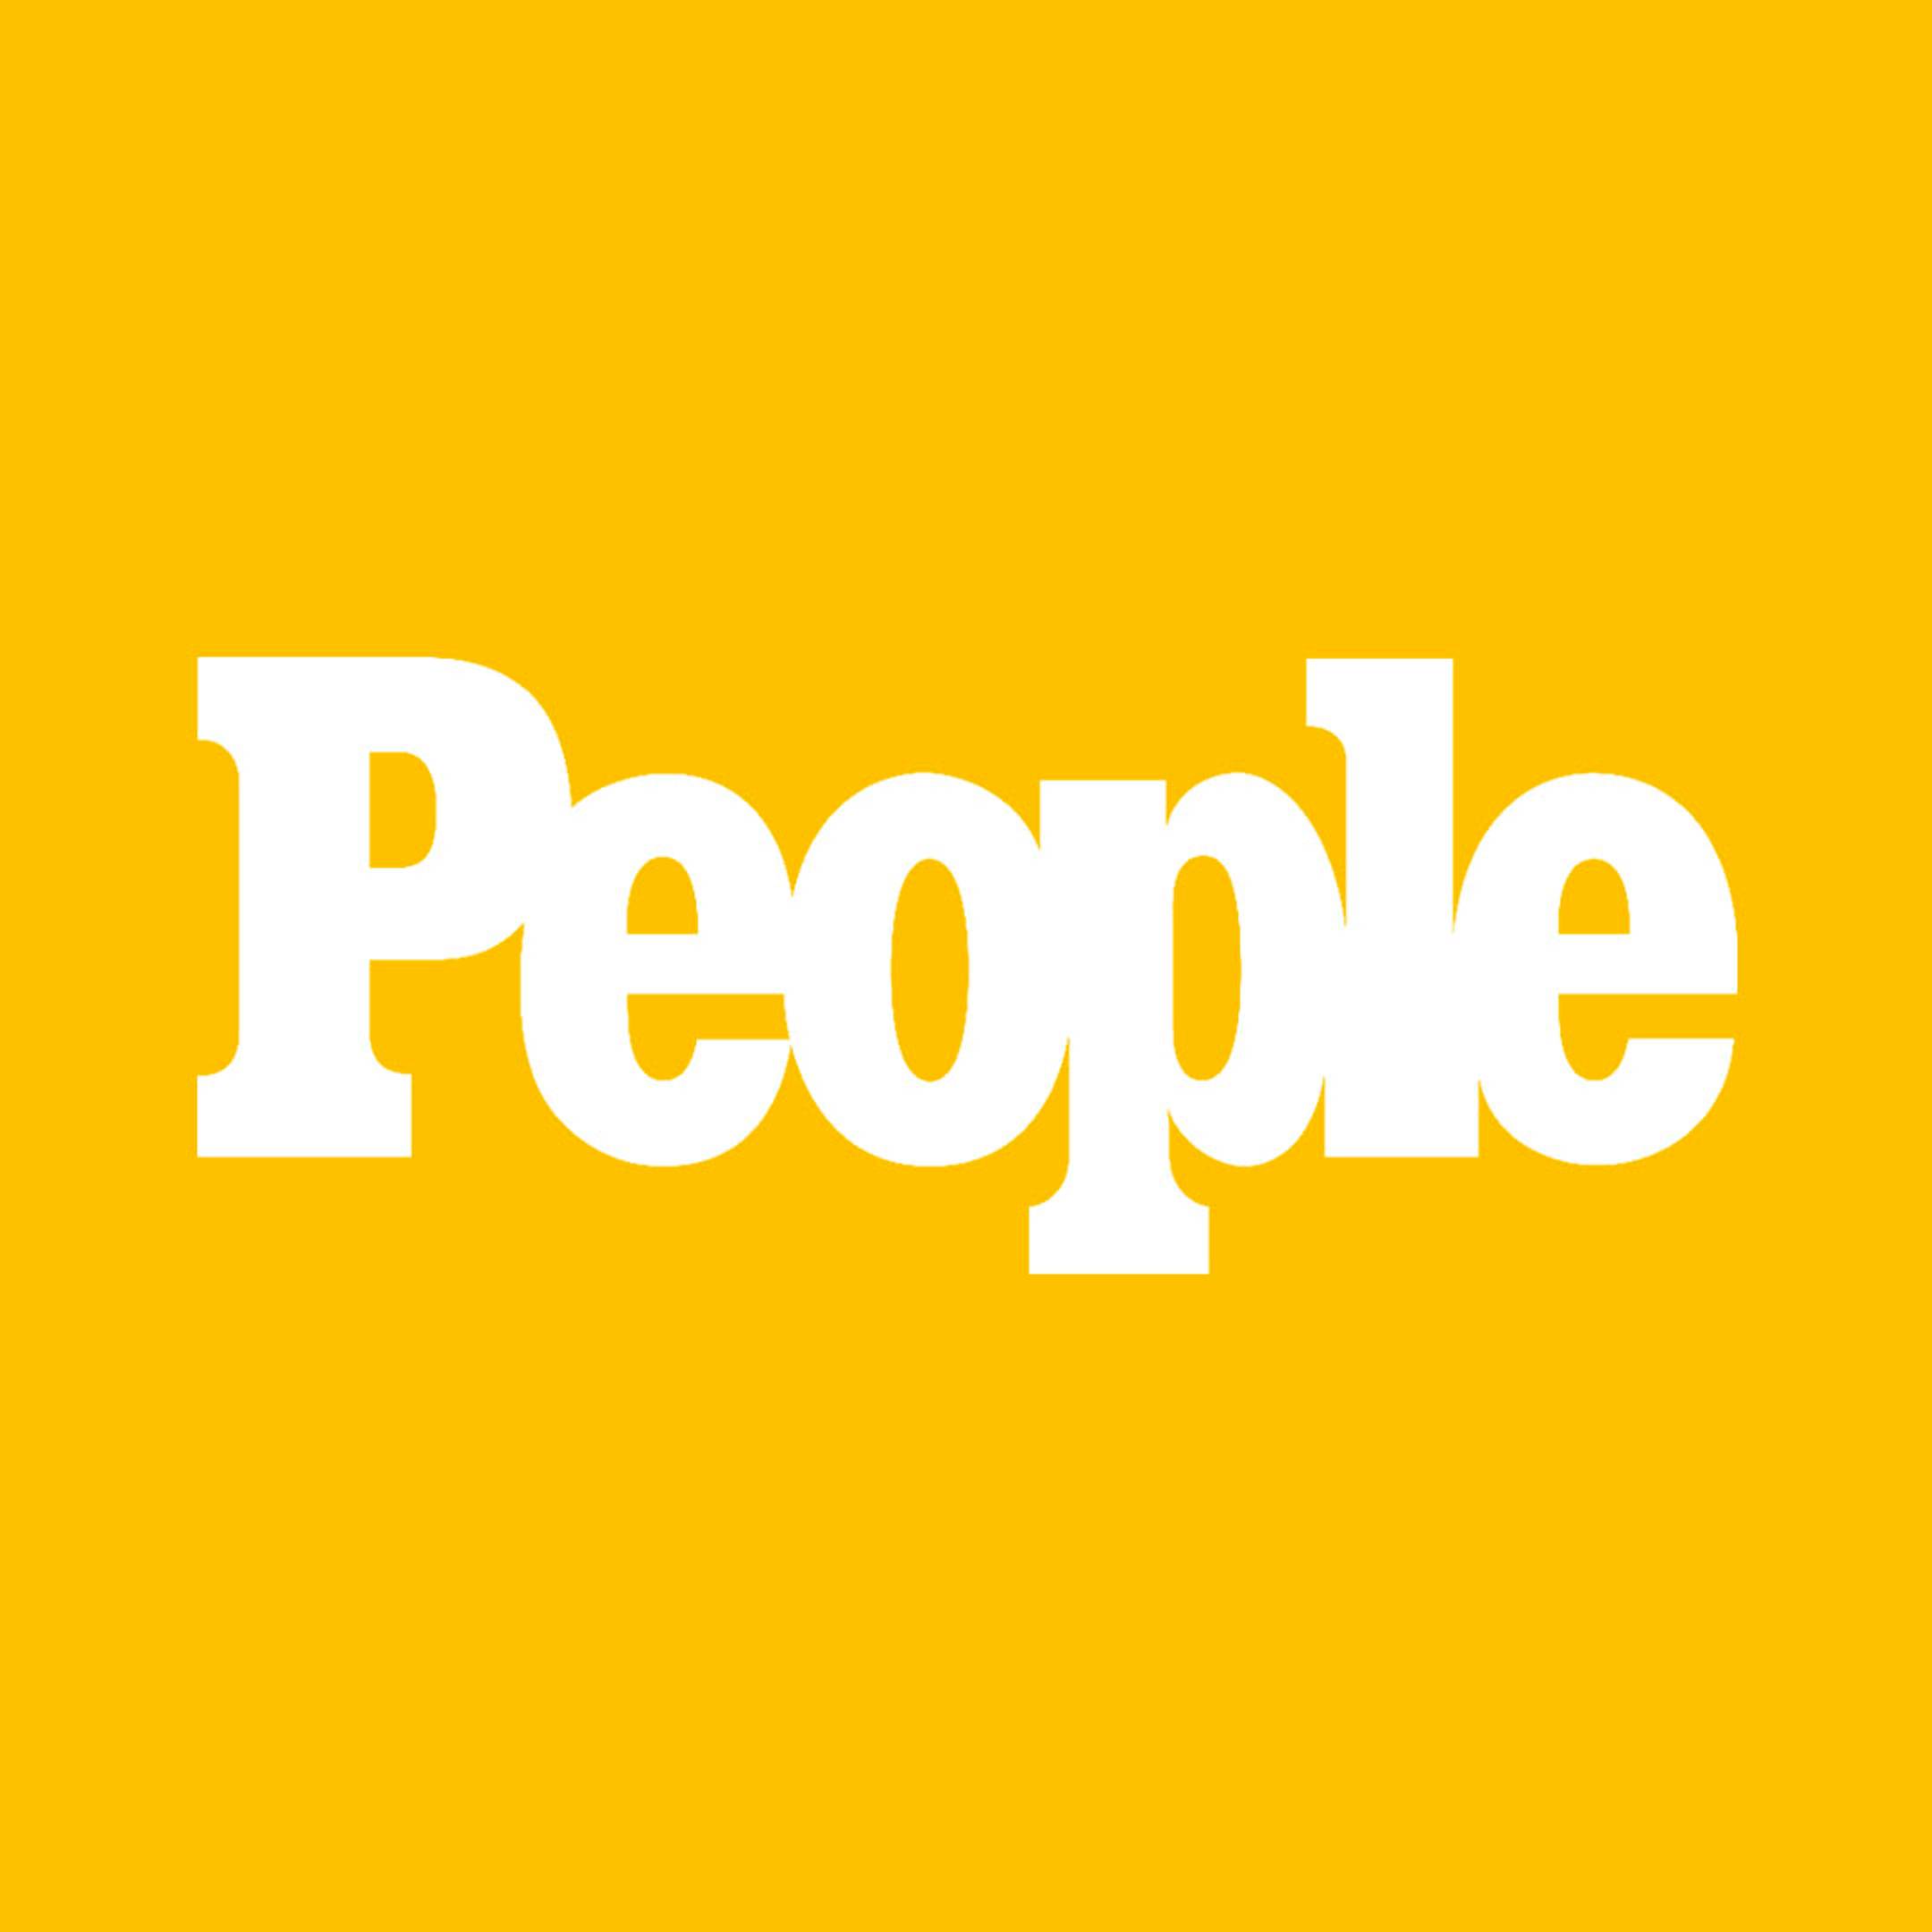 People Magazine logo on yellow background 